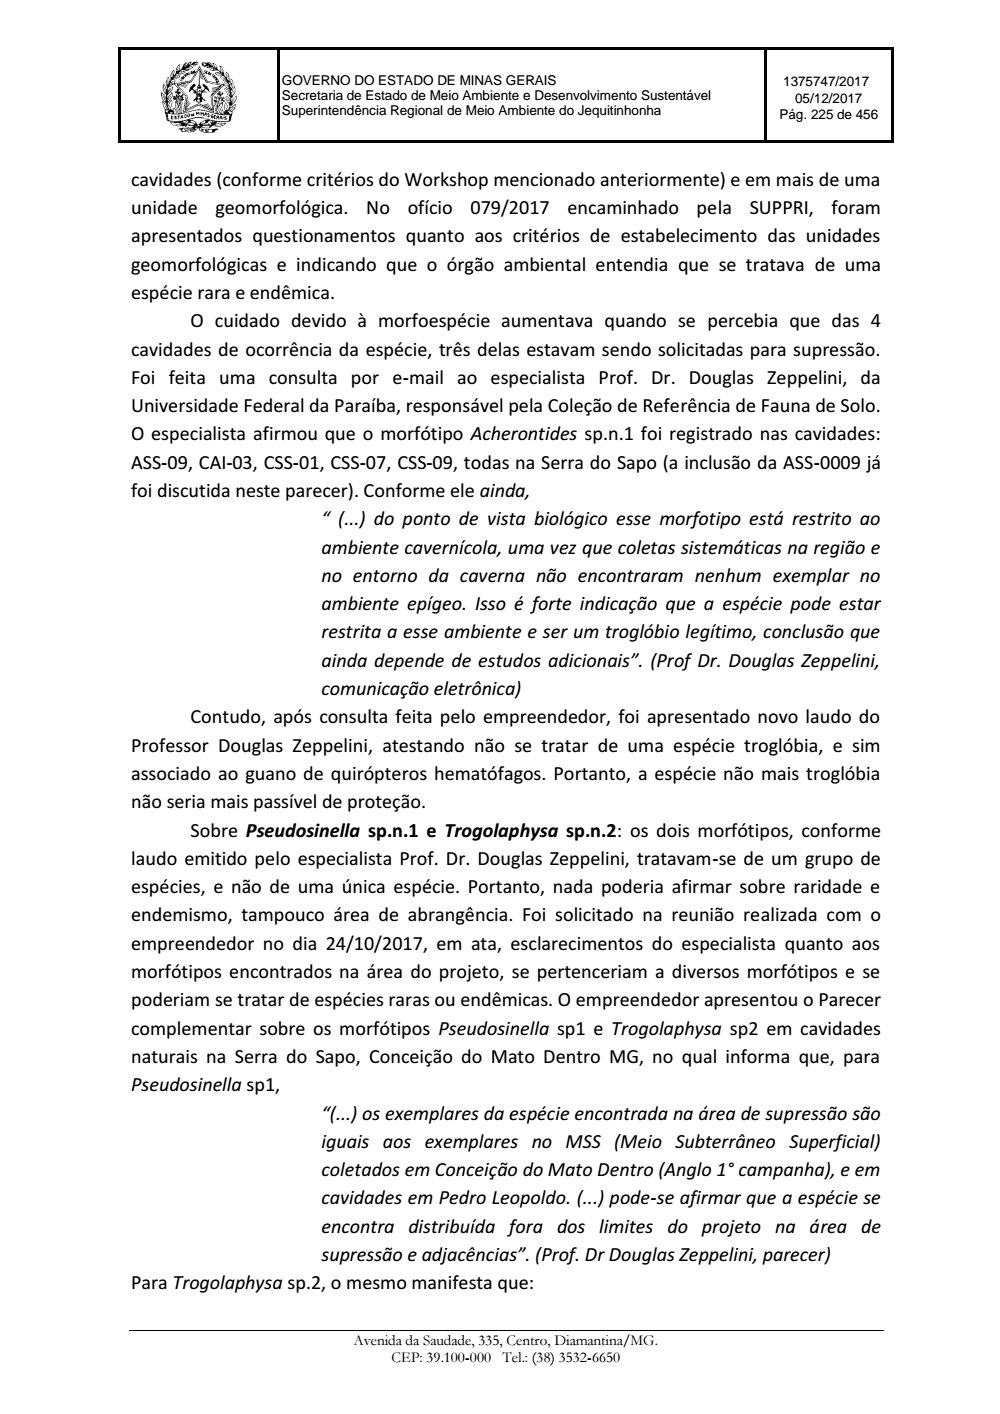 Page 225 from Parecer único da Secretaria de estado de Meio Ambiente e Desenvolvimento Sustentável (SEMAD)